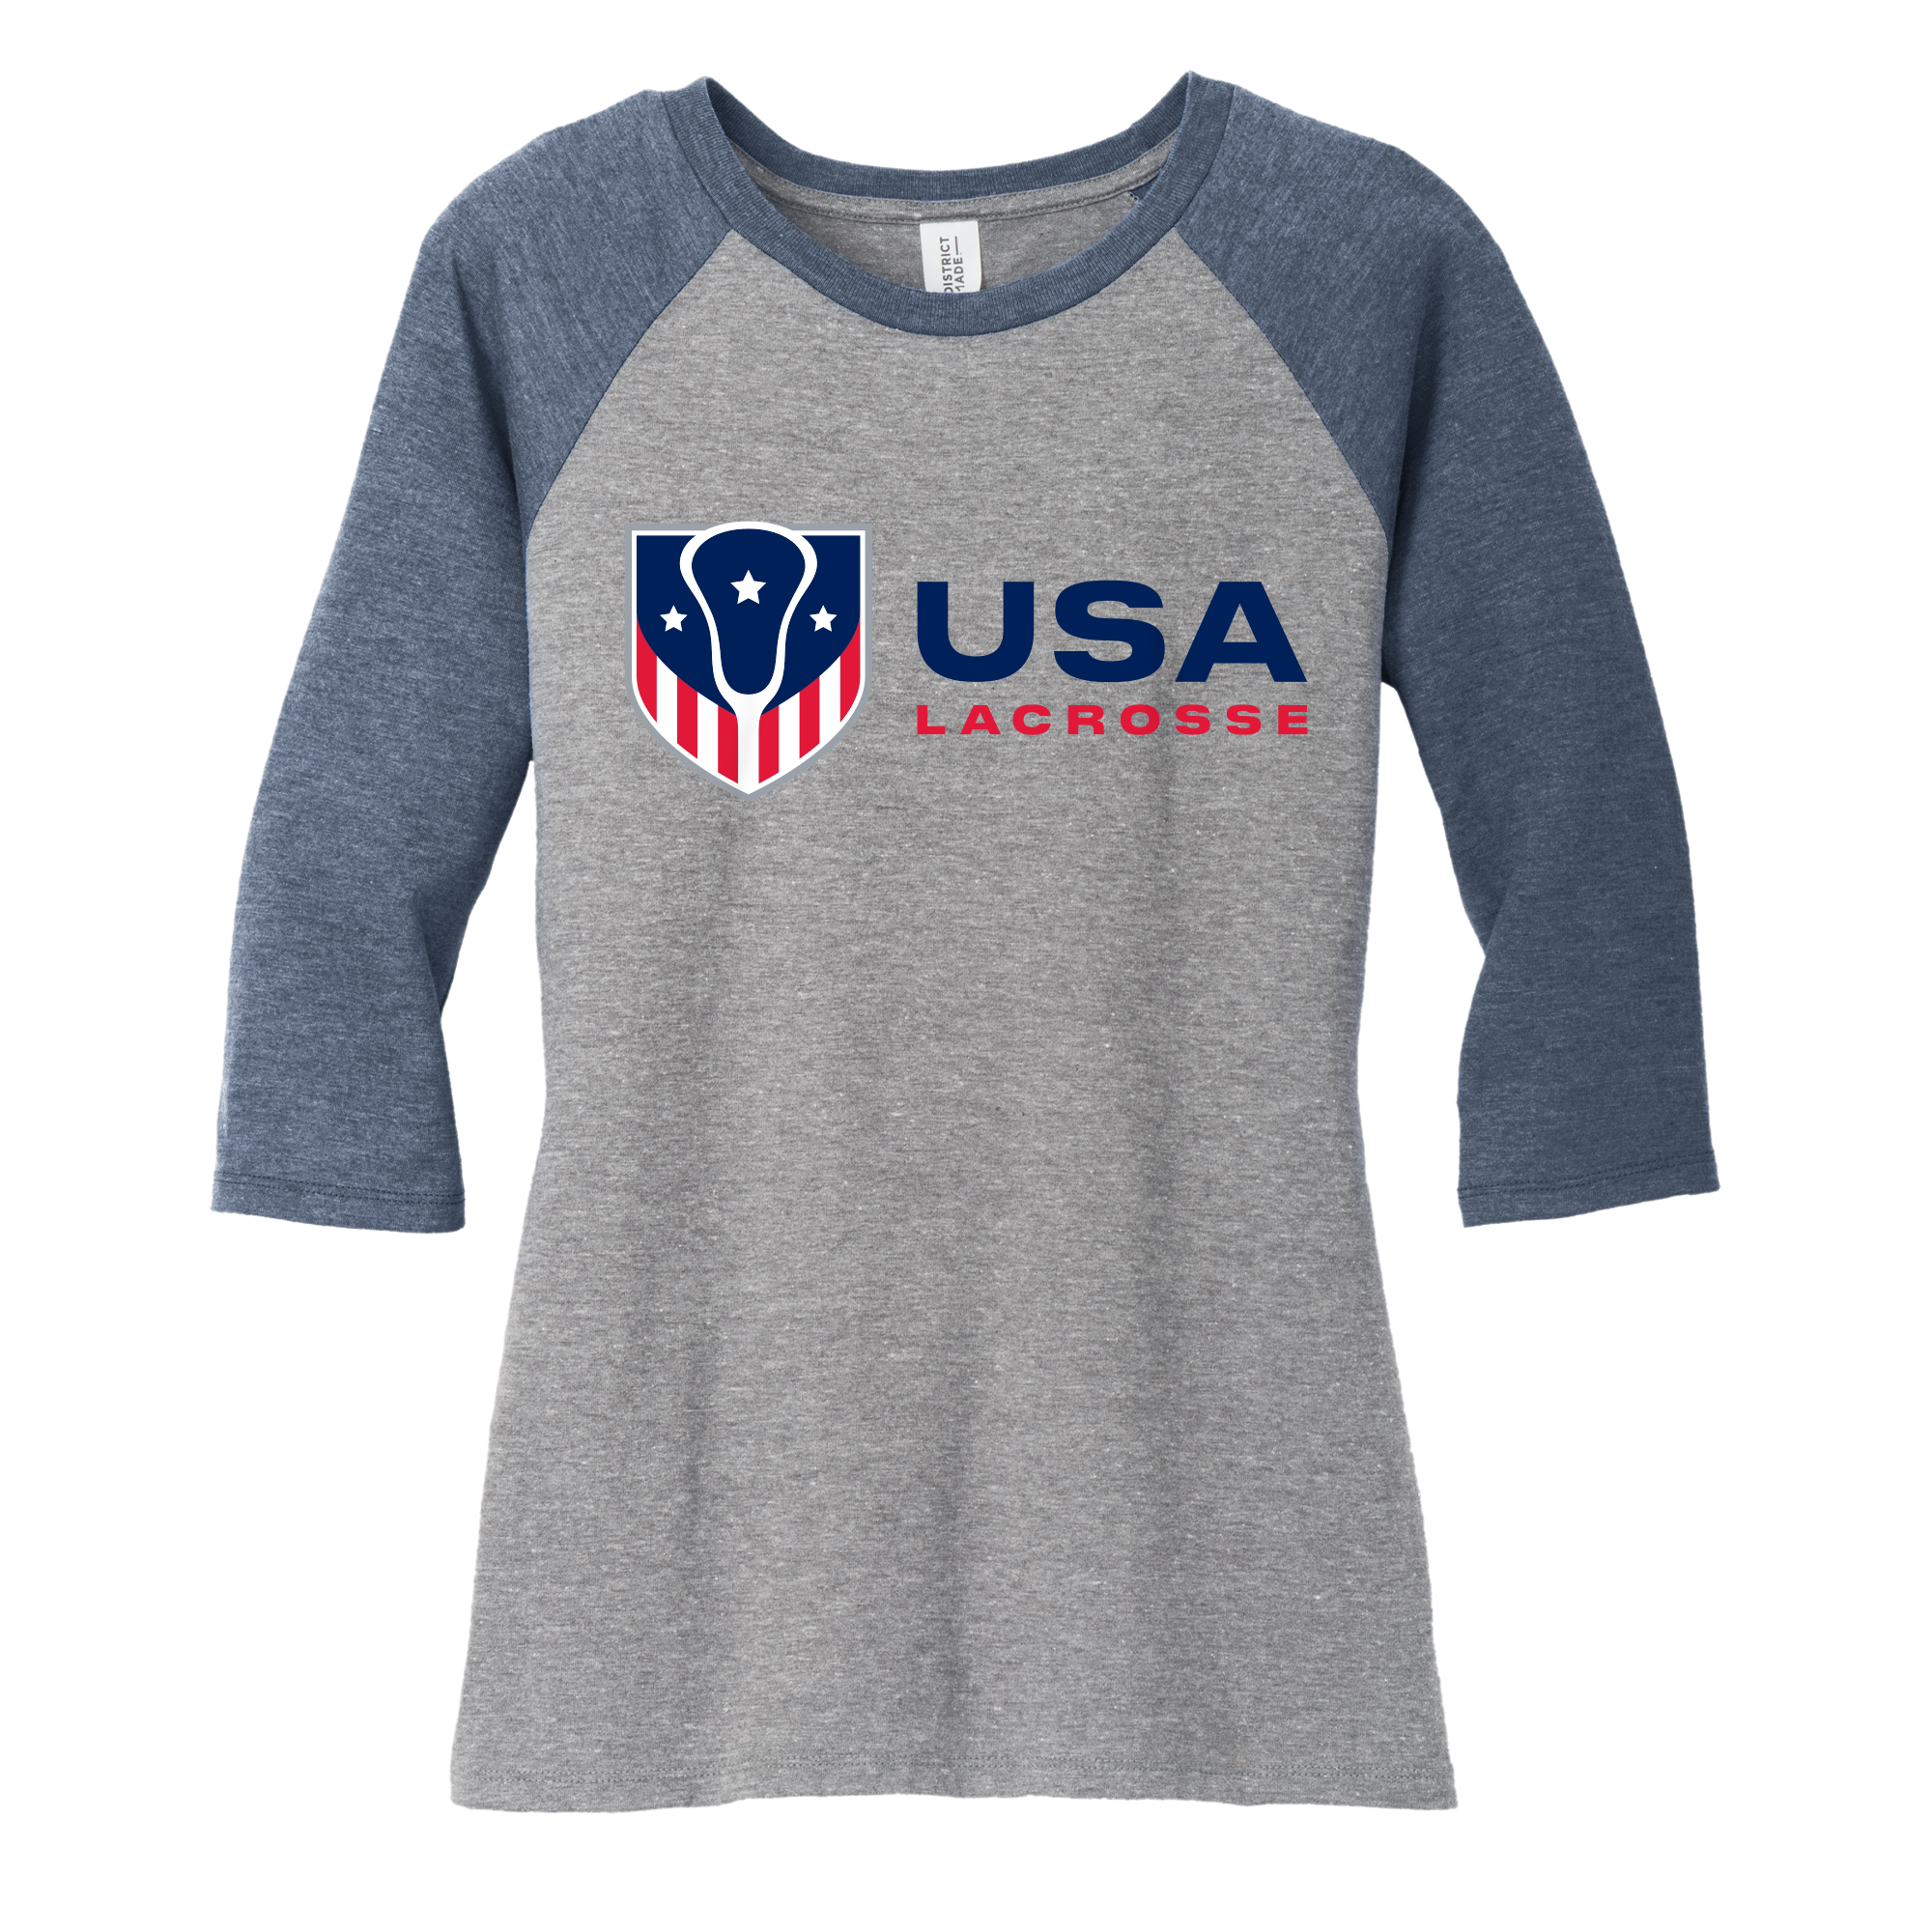 FINAL SALE - Women's USA Lacrosse Tri Blend 3/4 Sleeve